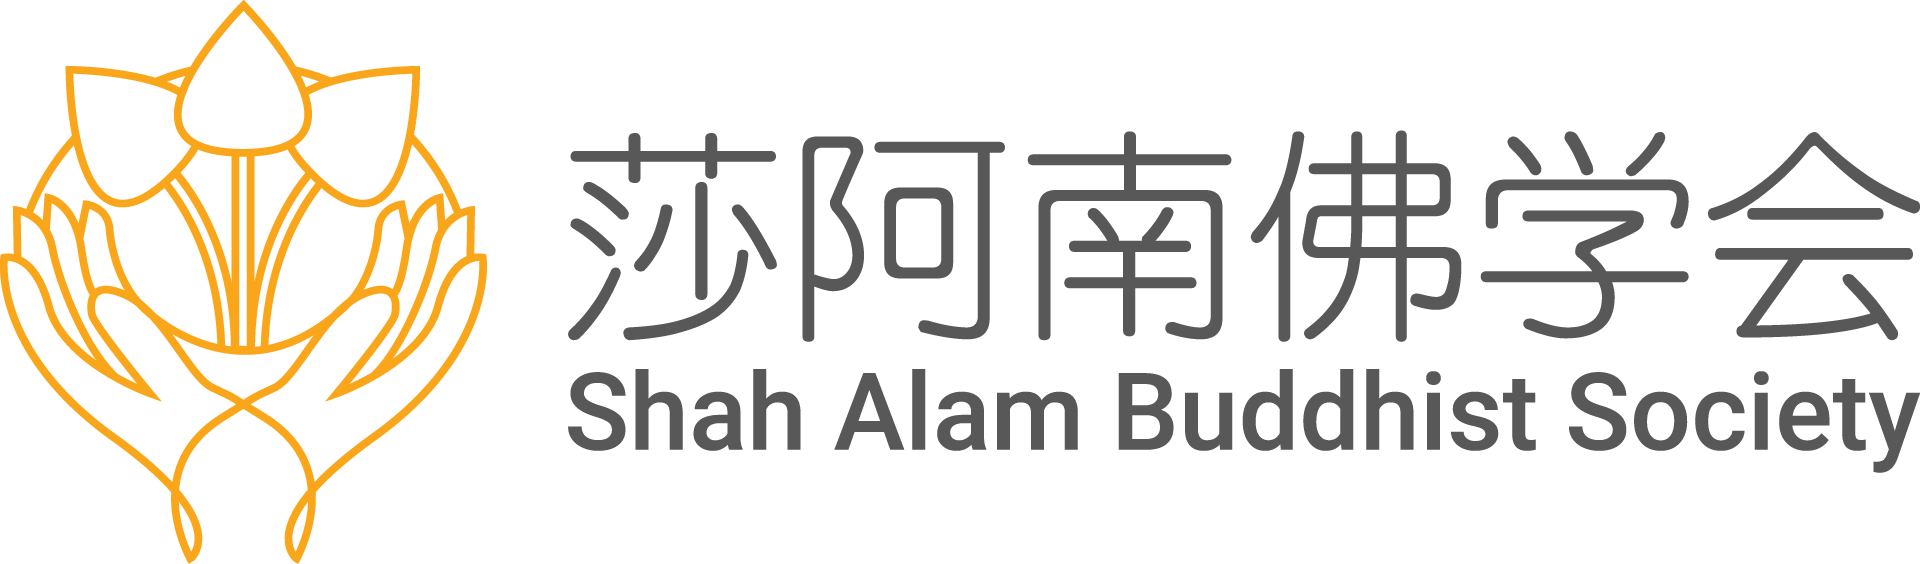 莎阿南佛学会 - Shah Alam Buddhist Society